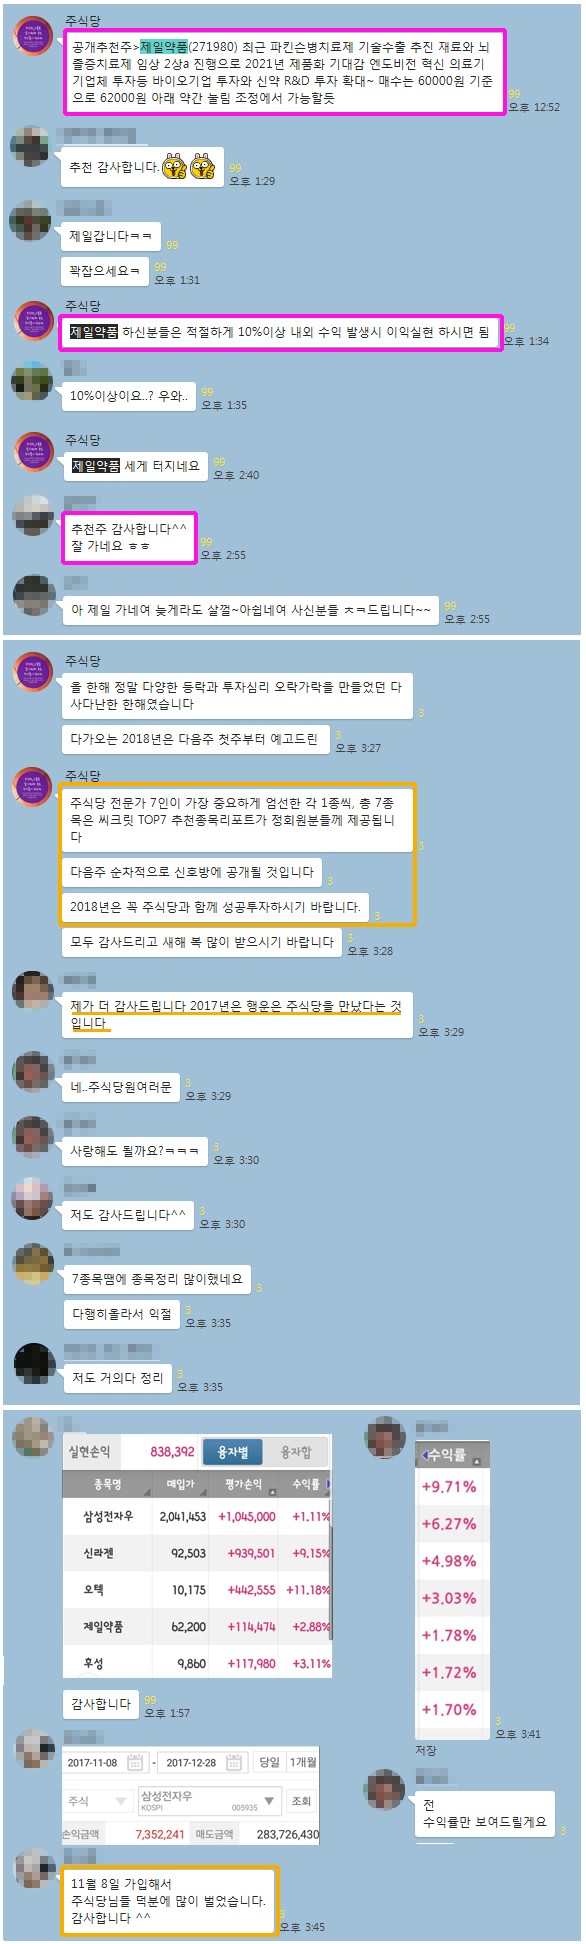 【공개추천주 +8.5% 수익중】 “Top7 종목 추천 시작!”